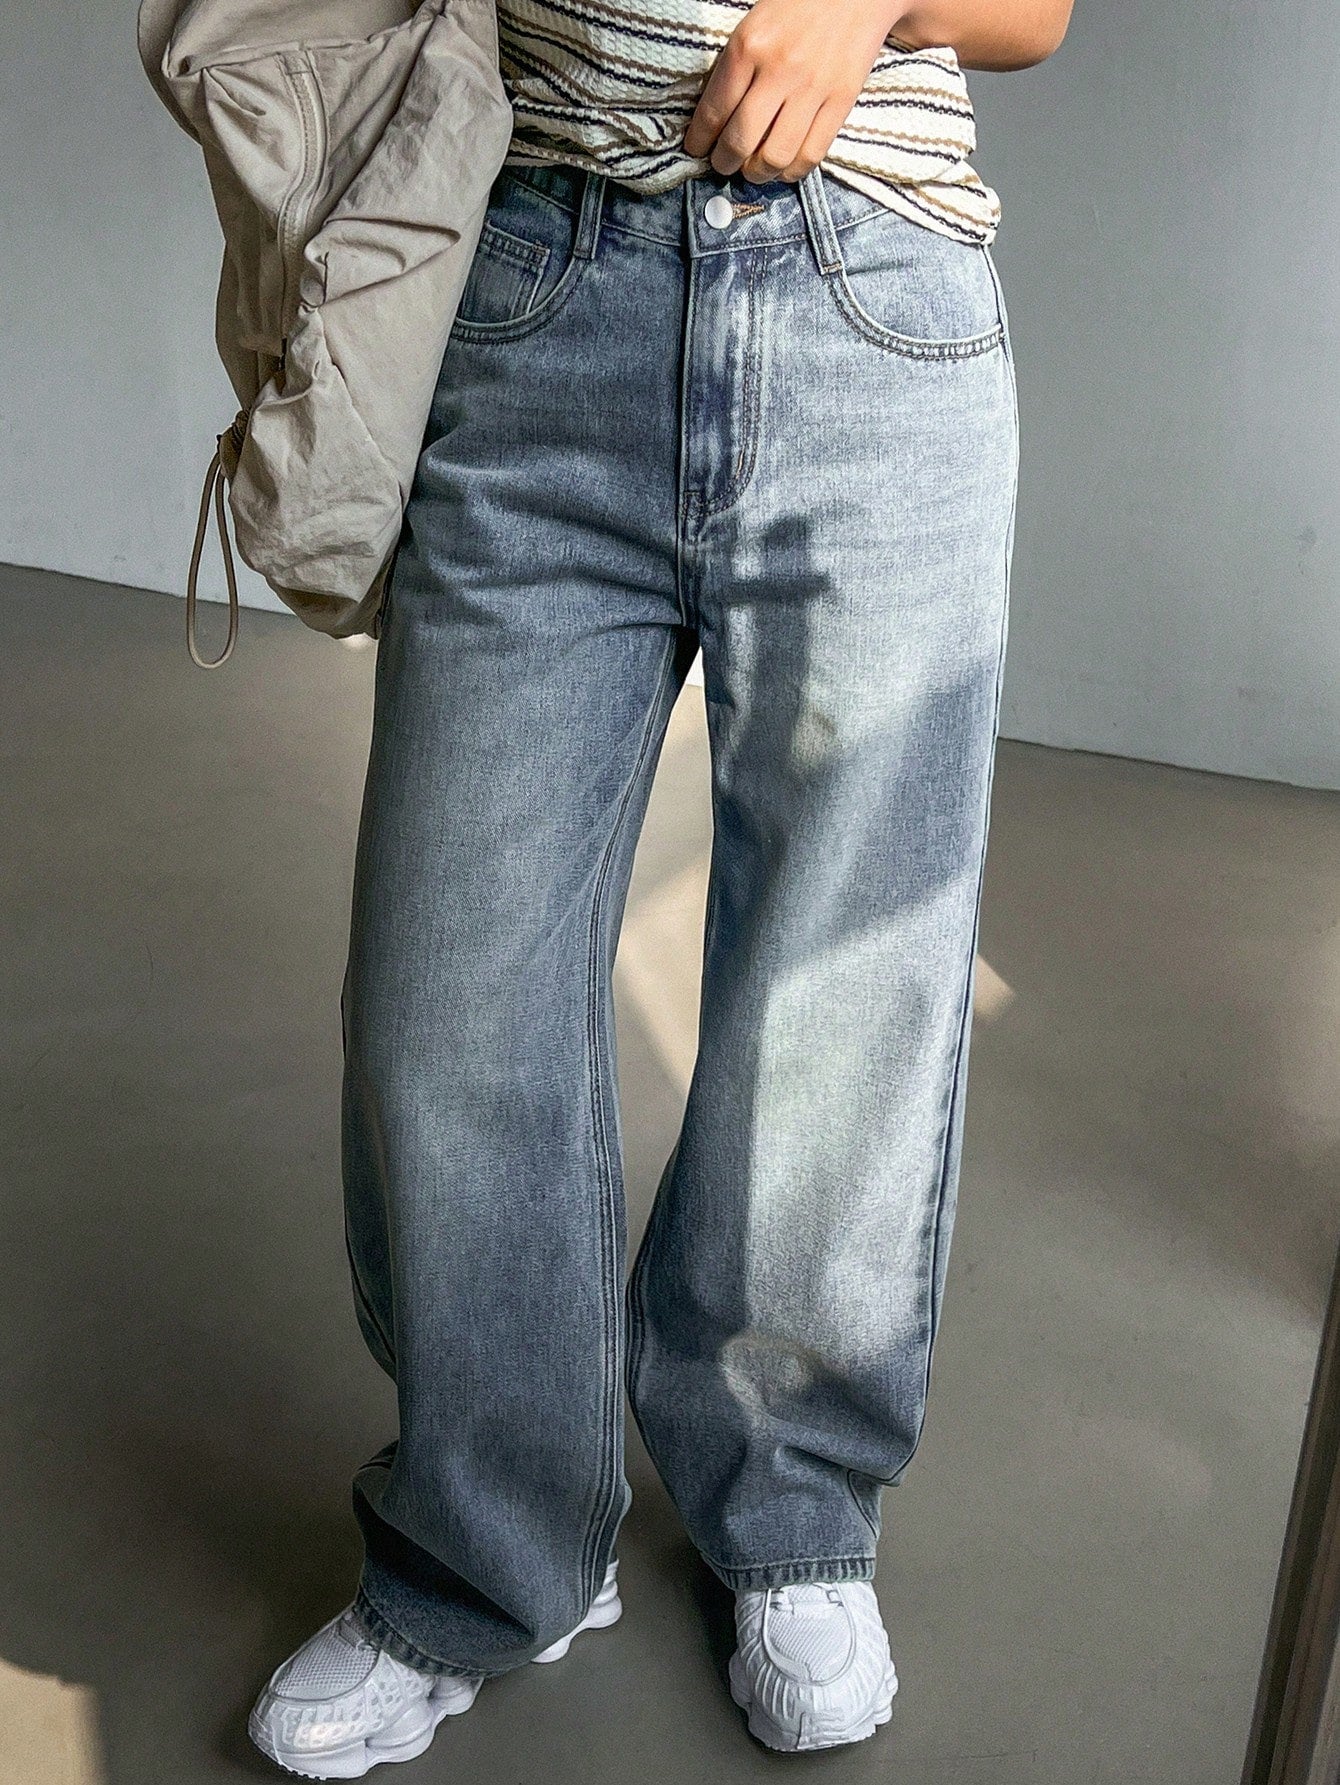 Holey Straight Leg Long Denim Jeans For Women